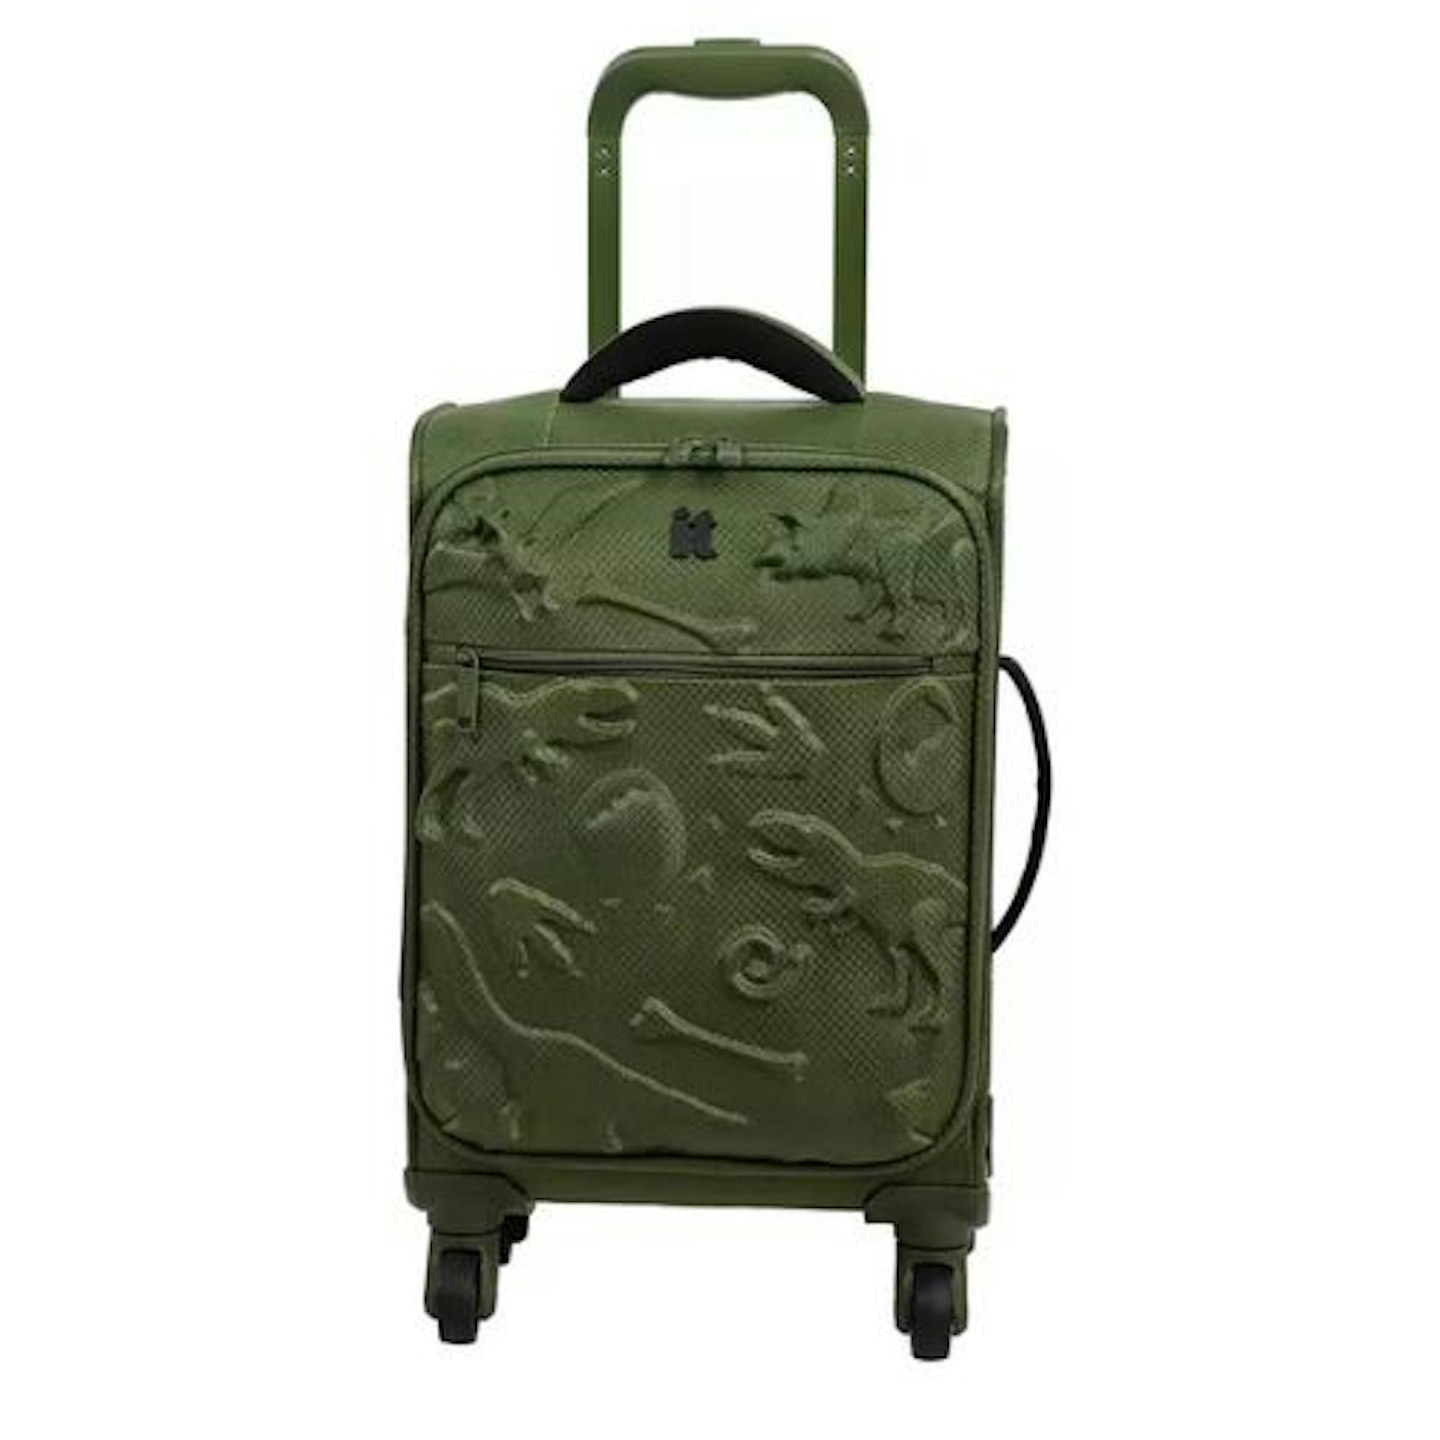 Best children's suitcases it Luggage Children's Dinosaur 4 Wheel Soft Cabin Suitcase